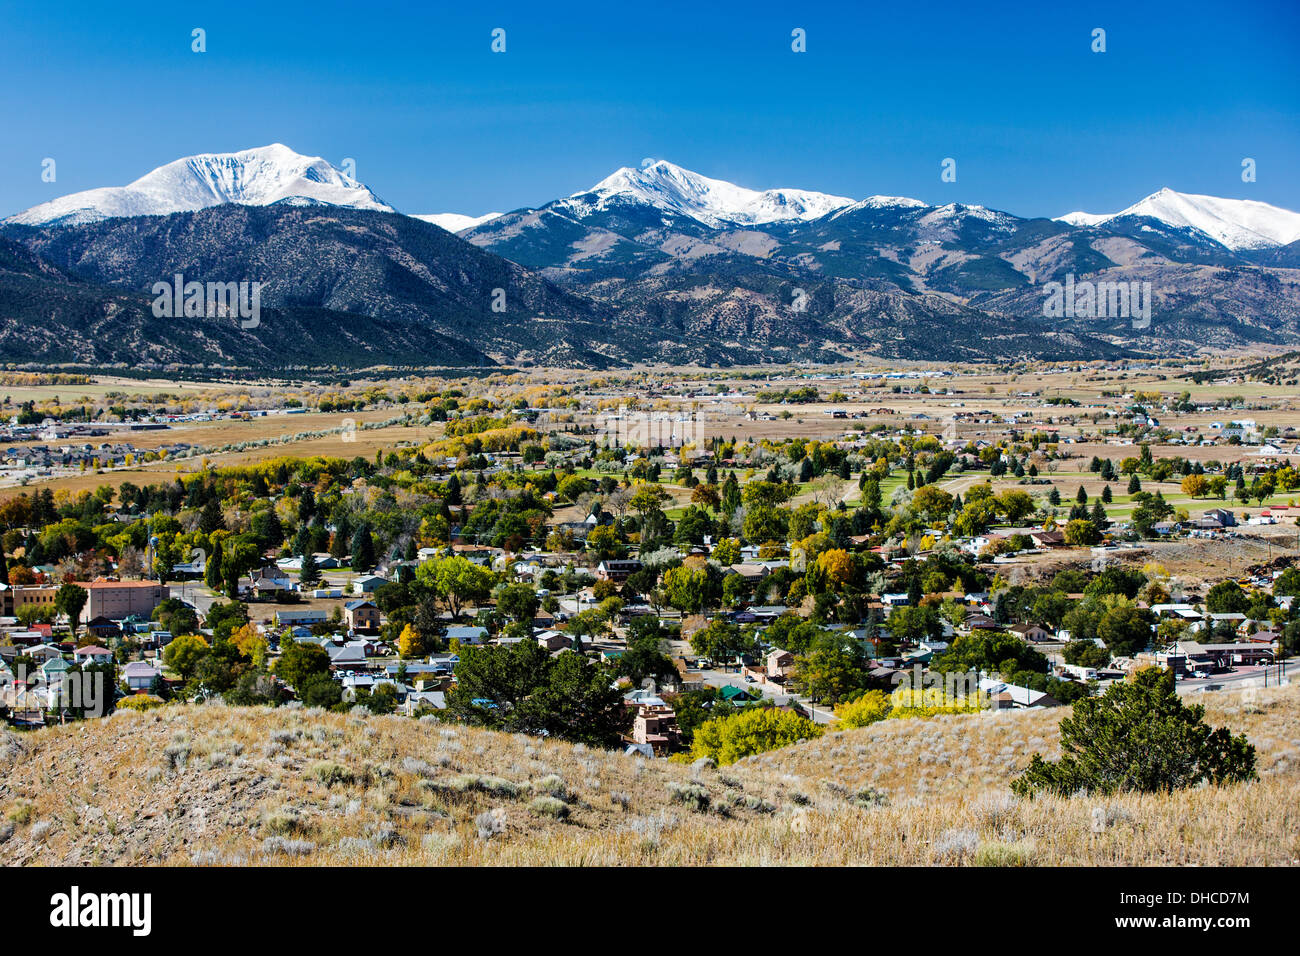 El follaje de otoño, Sawatch Range, montañas rocosas, y la histórica Salida, Colorado, EE.UU. Foto de stock